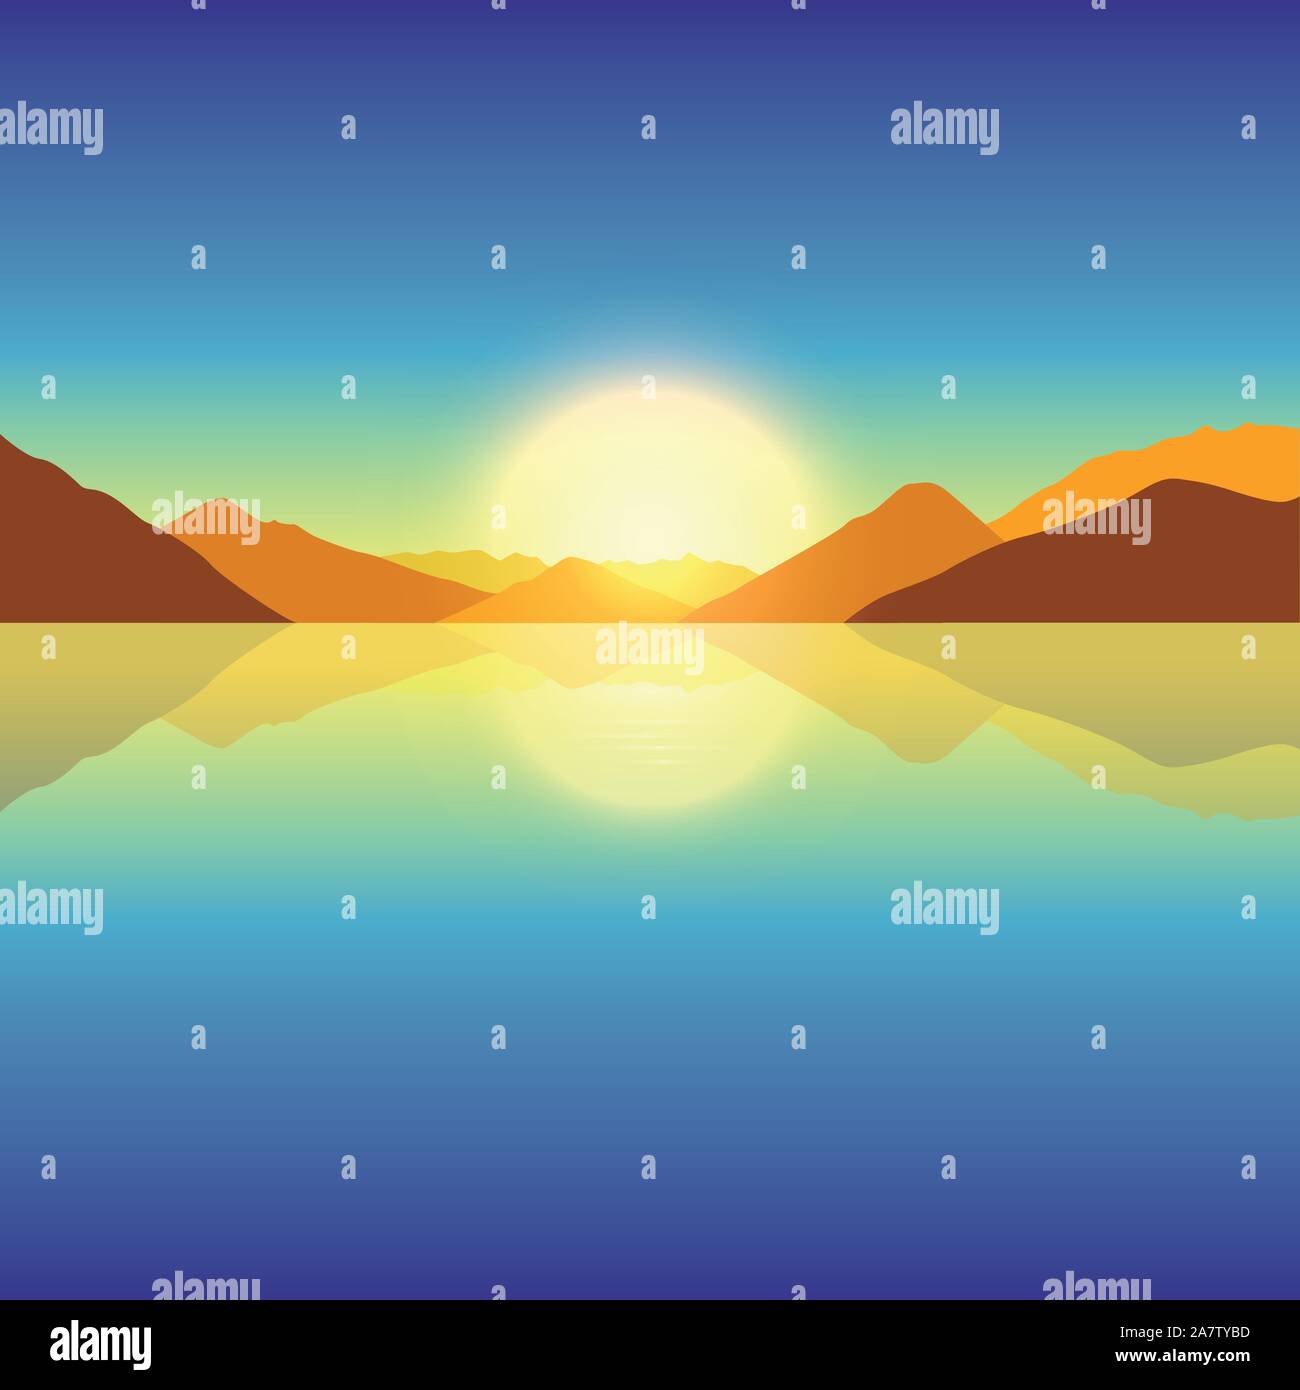 romantic sunset on autumn mountain and ocean landscape vector illustration EPS10 Stock Vector